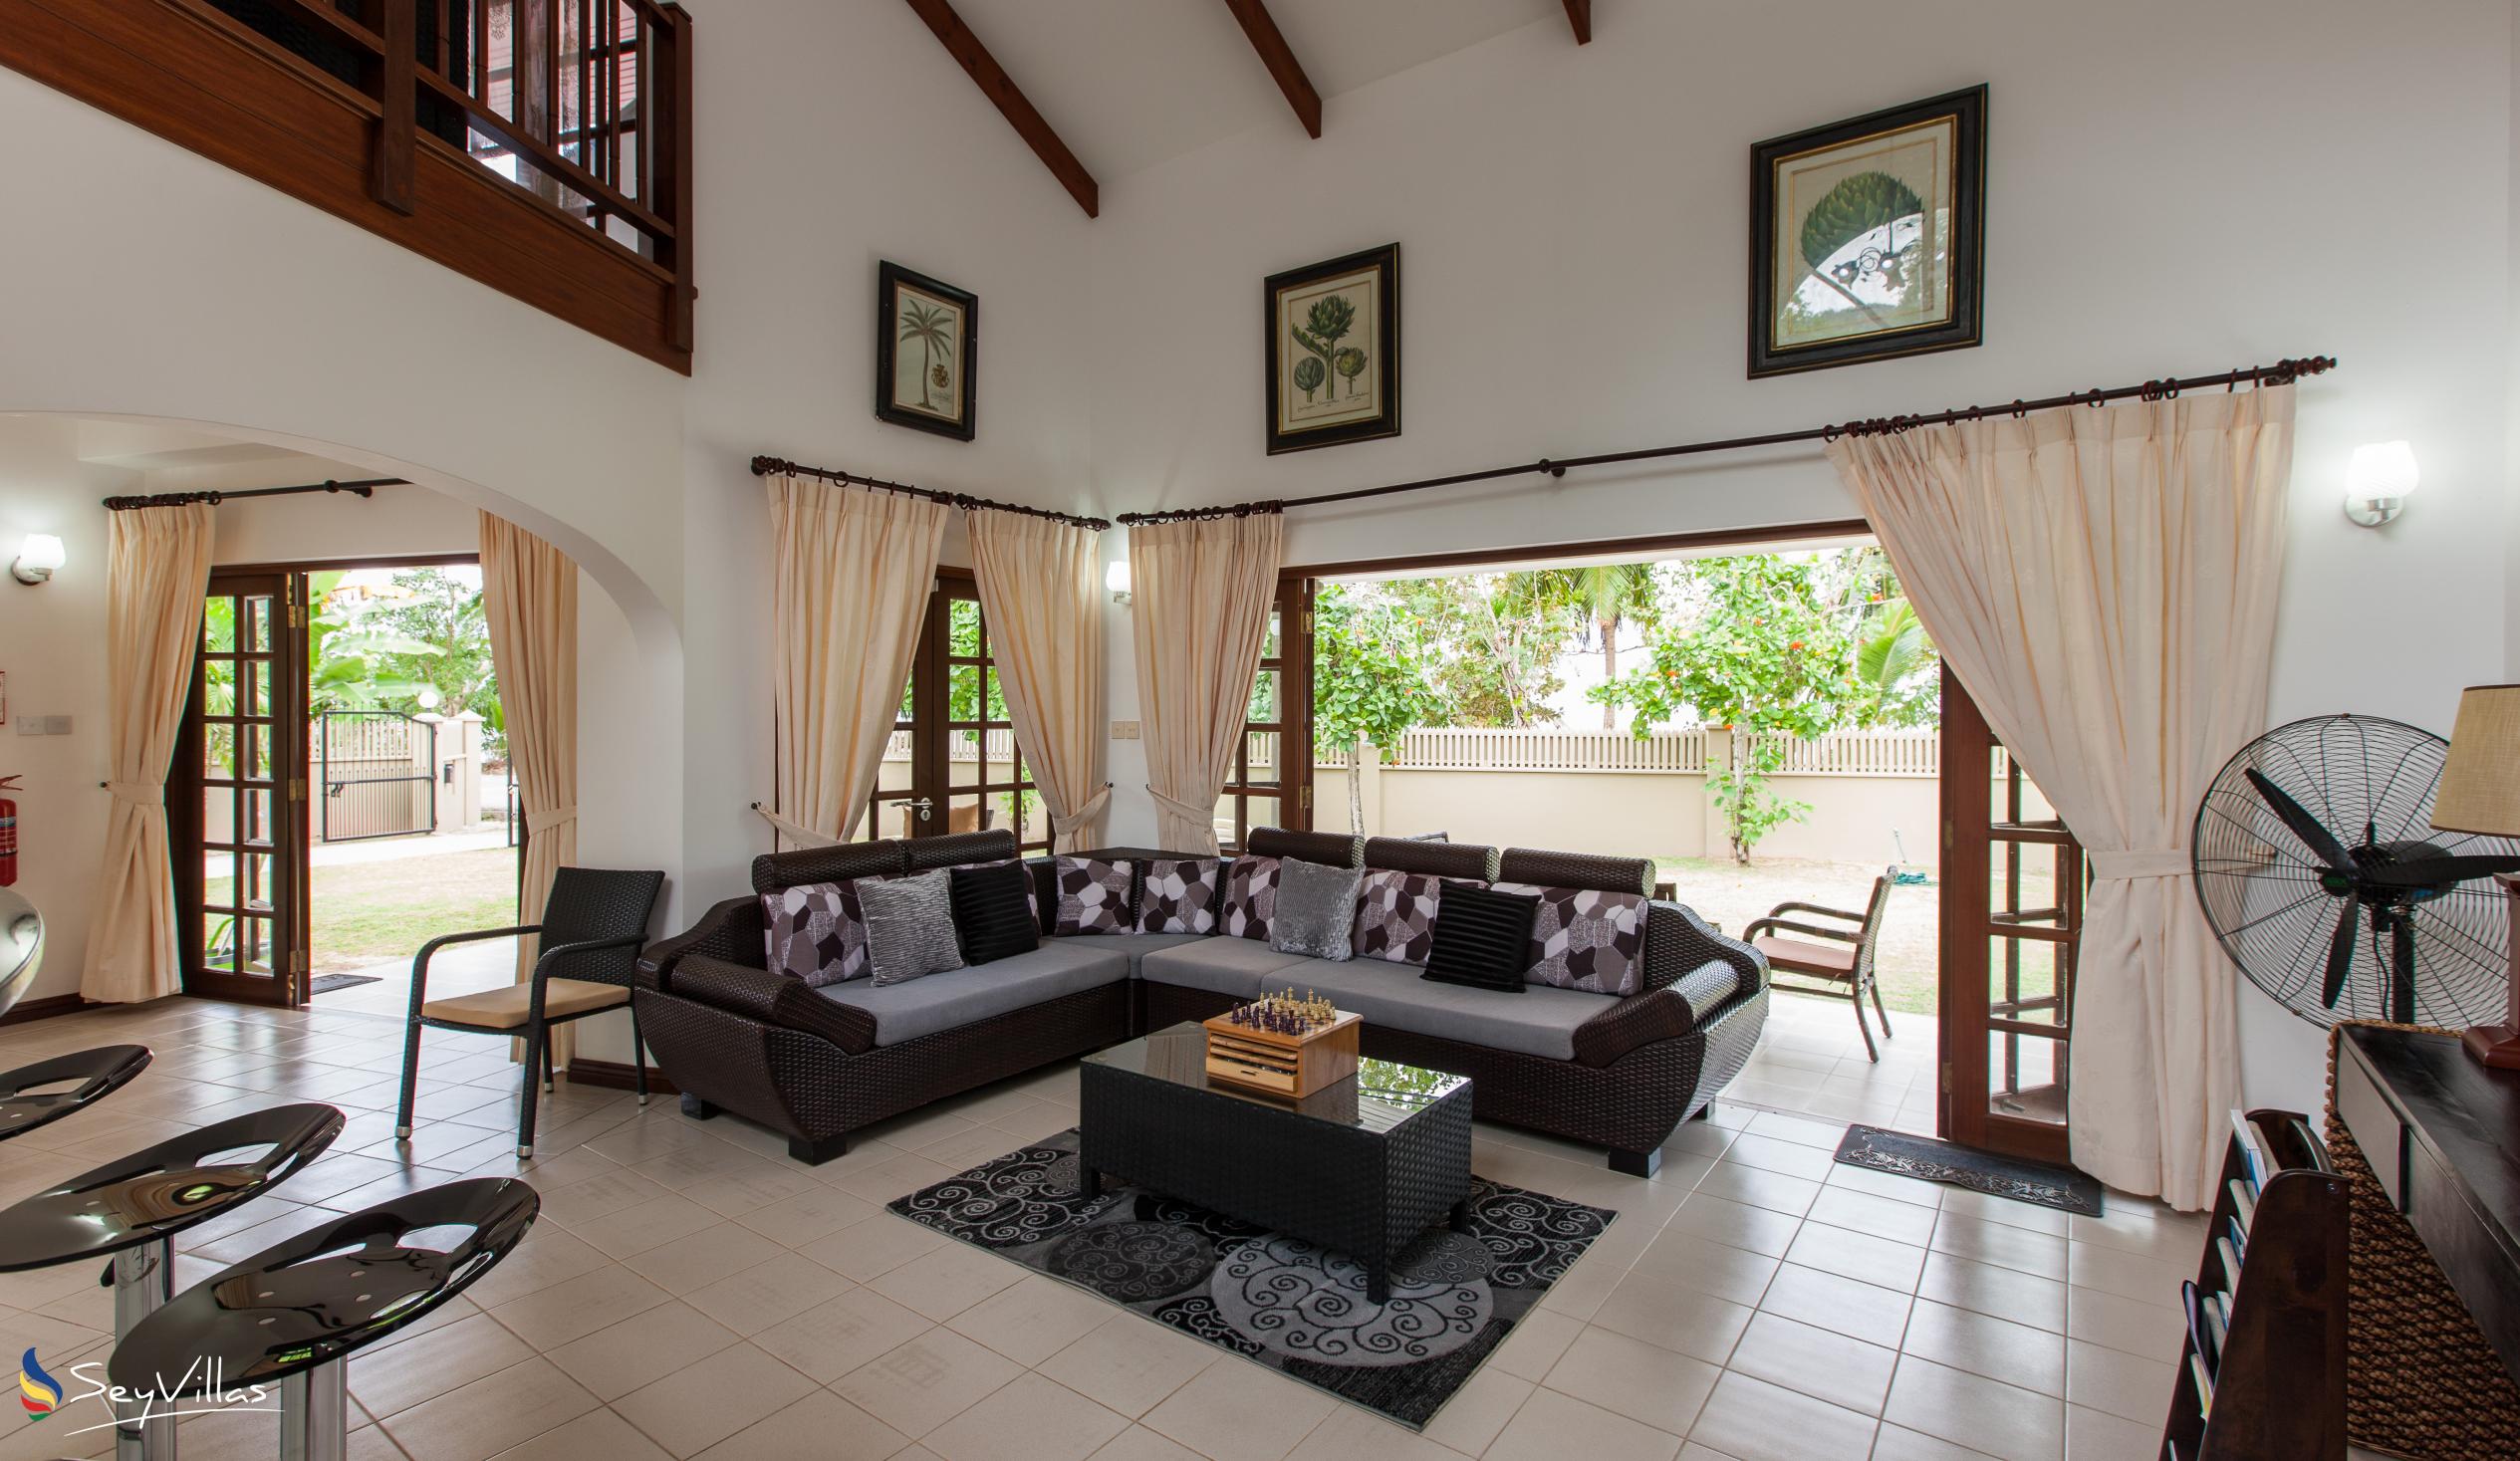 Foto 12: Villa Saint Sauveur - Innenbereich - Praslin (Seychellen)